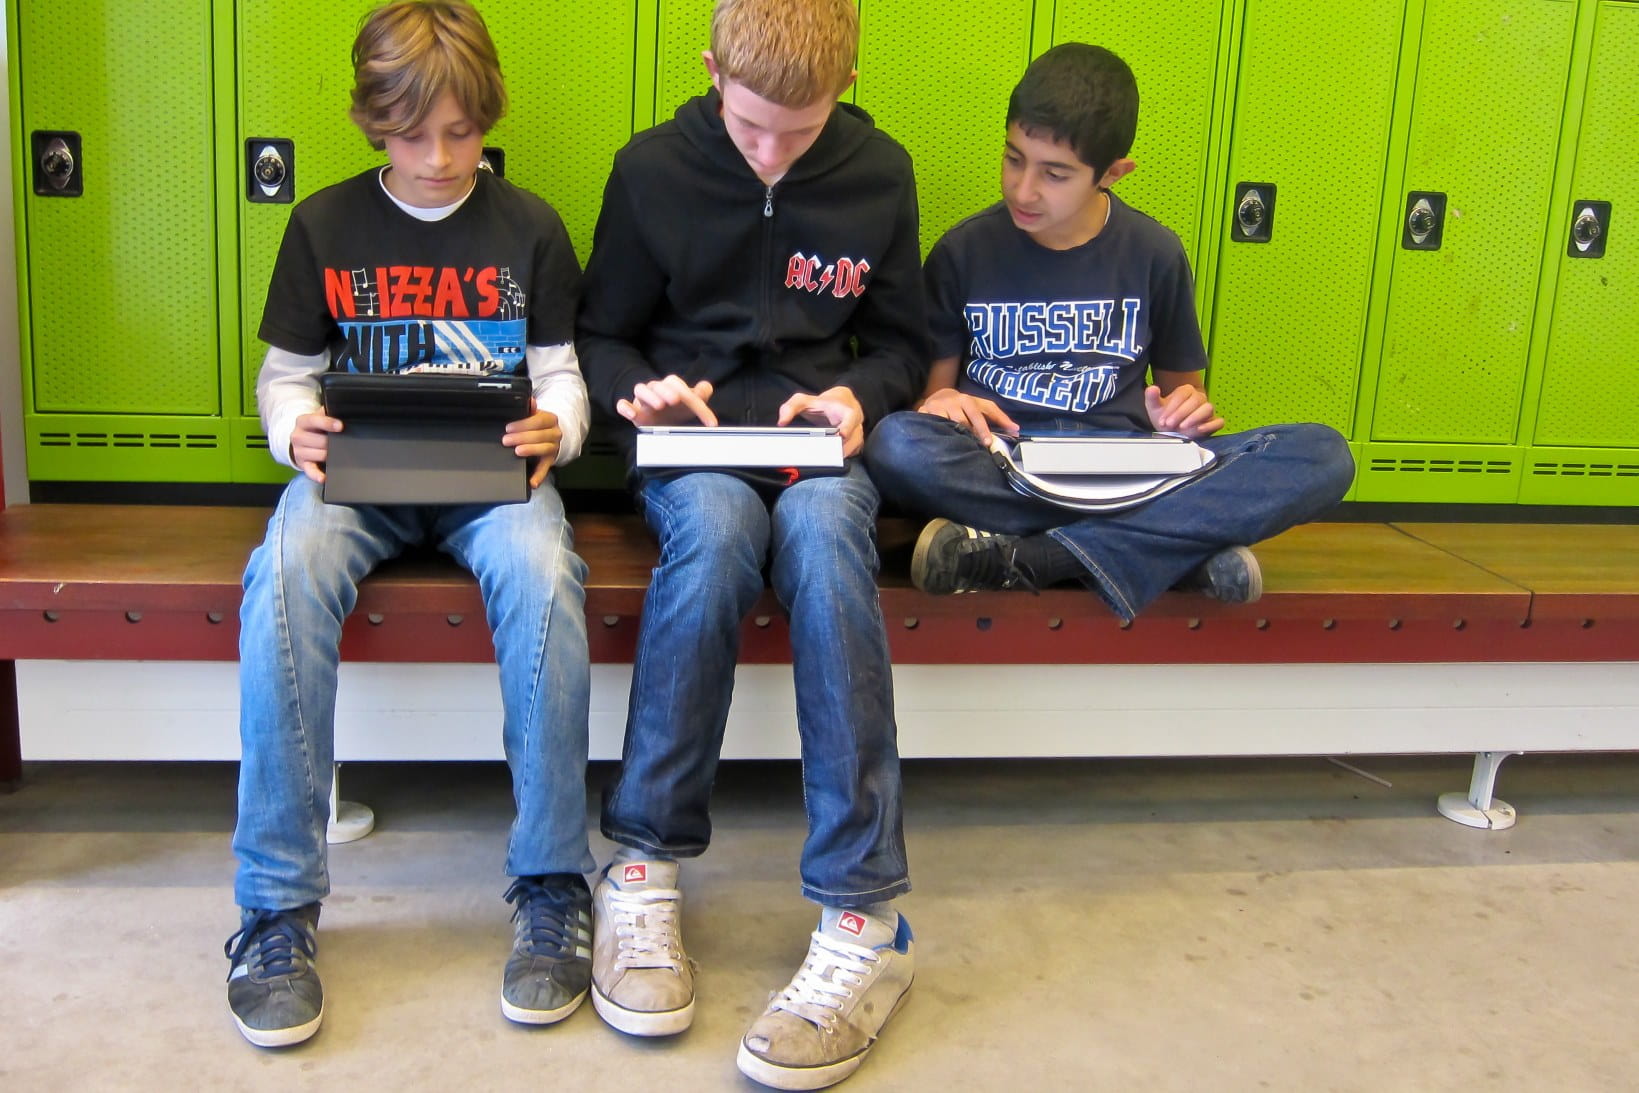 Drenge kigger på iPad